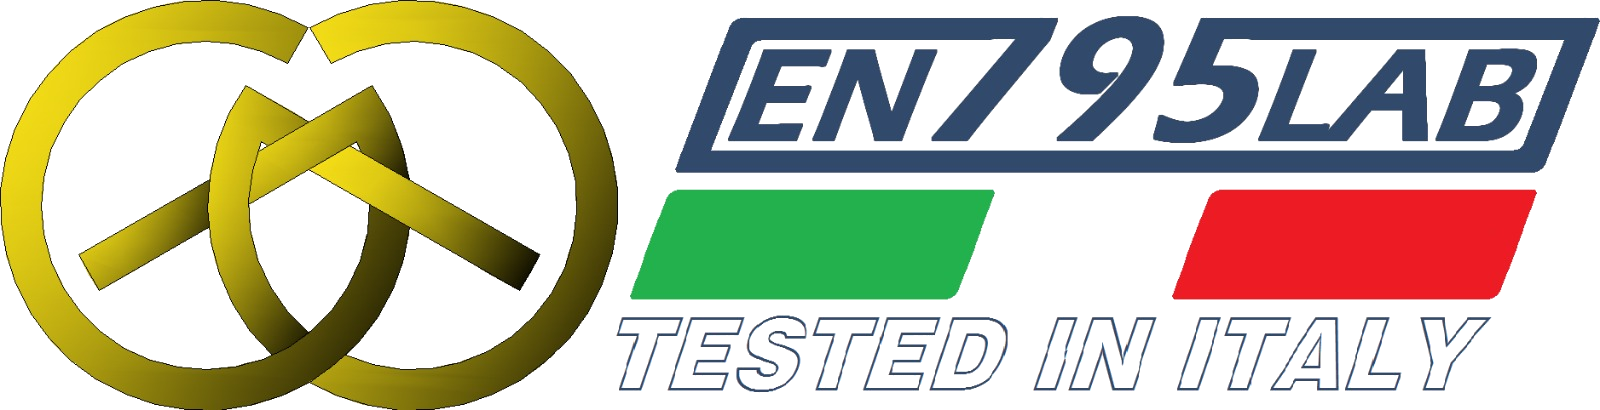 EN795LAB-Elenco prove-EN795LAB - Excellence in testing